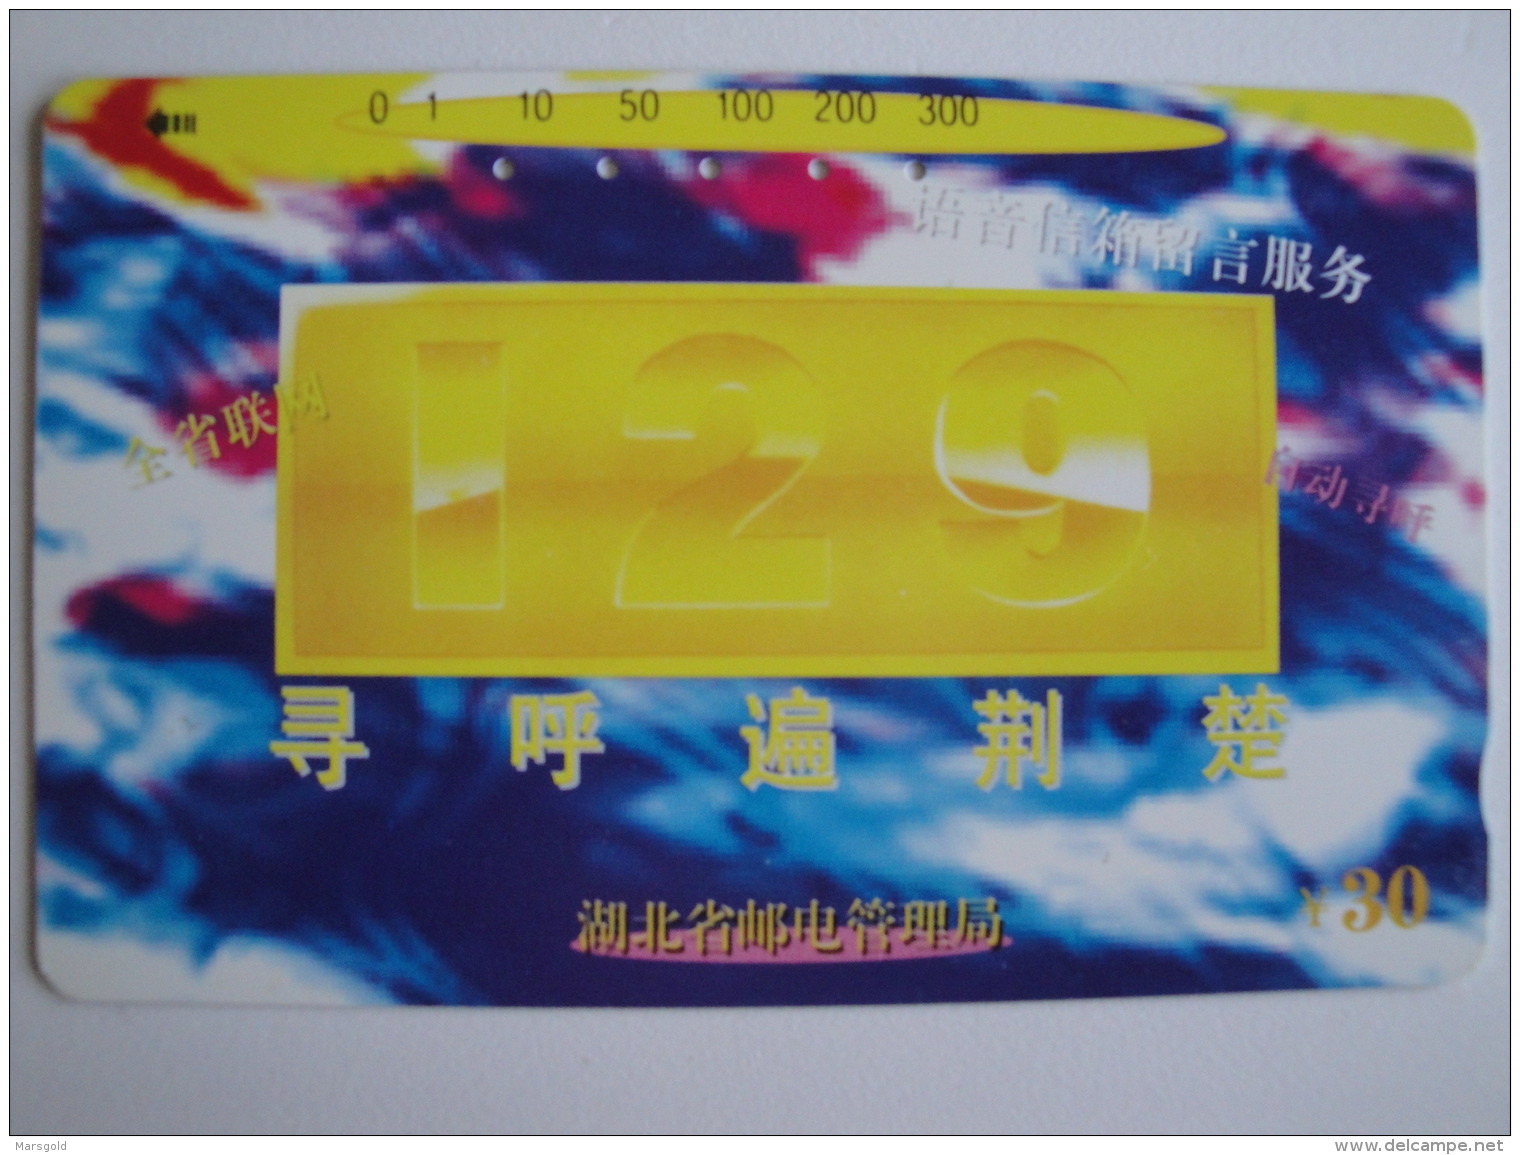 1 Tamura Phonecard From China - 129 - China